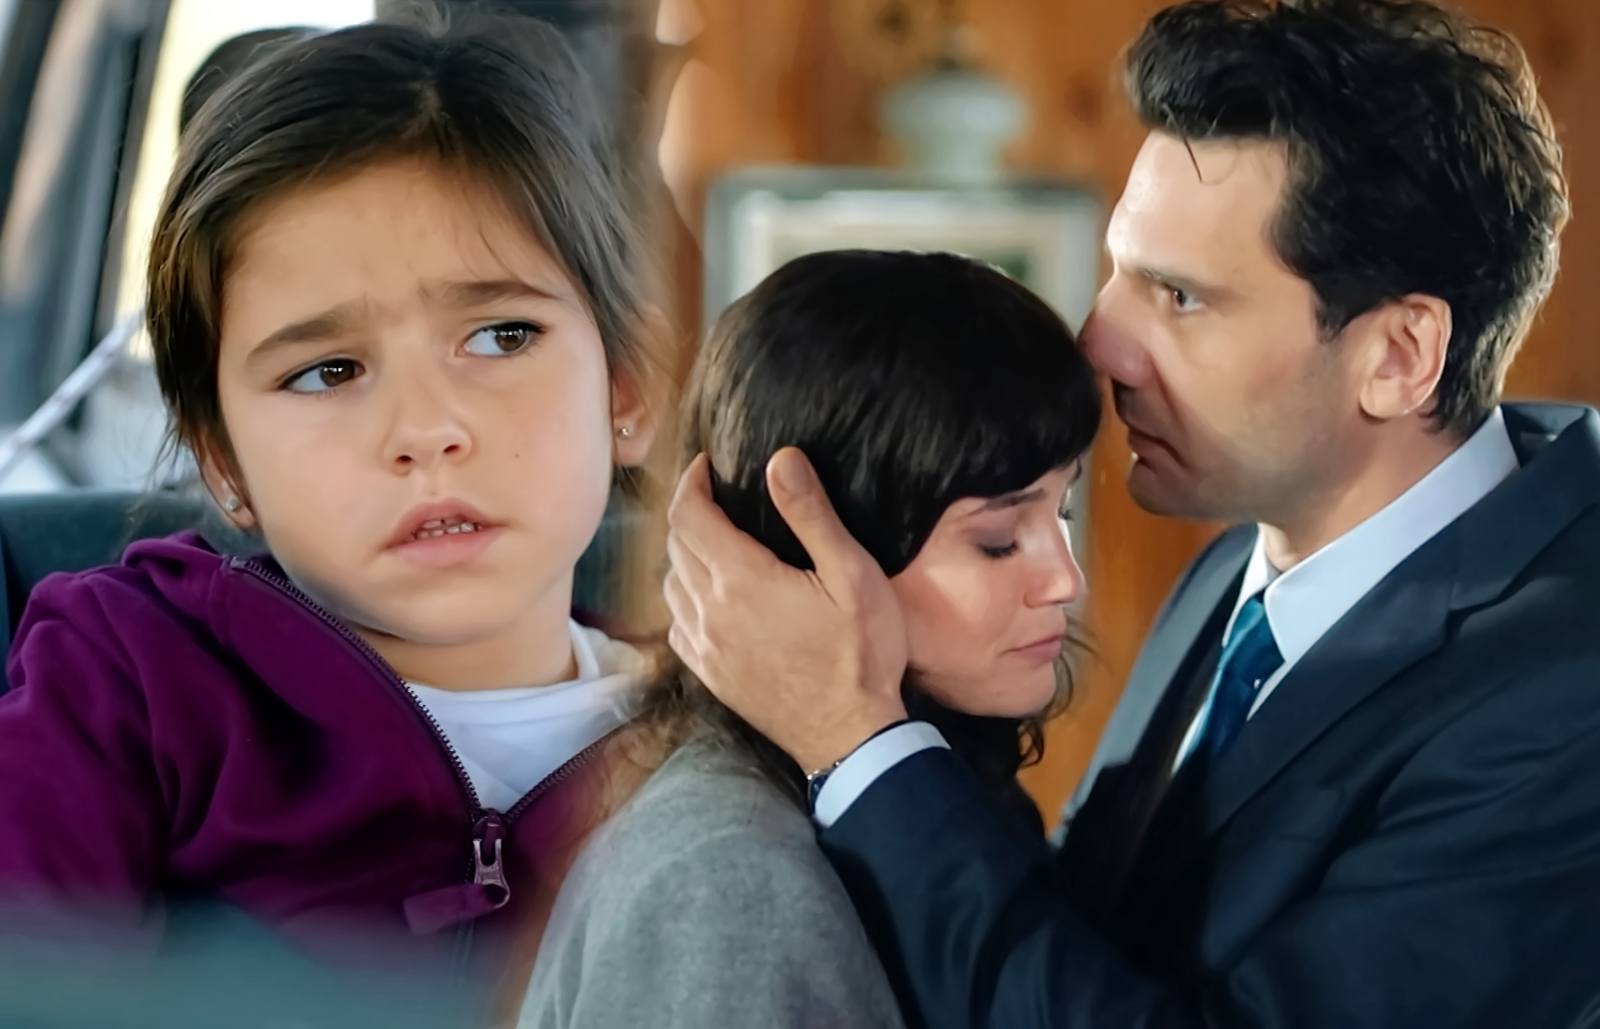 Ceylin e Ilgaz descubren quién secuestró a su hija Merçan y están a punto de encontrarla, en Secretos de familia